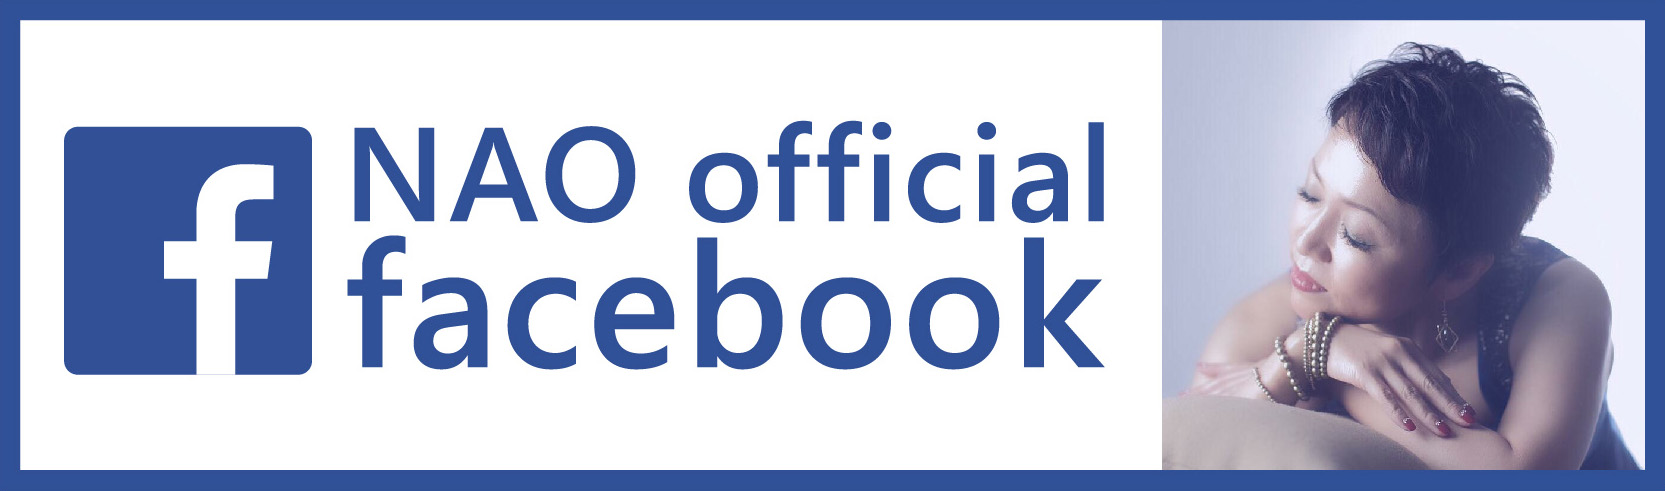 NAO official facebook